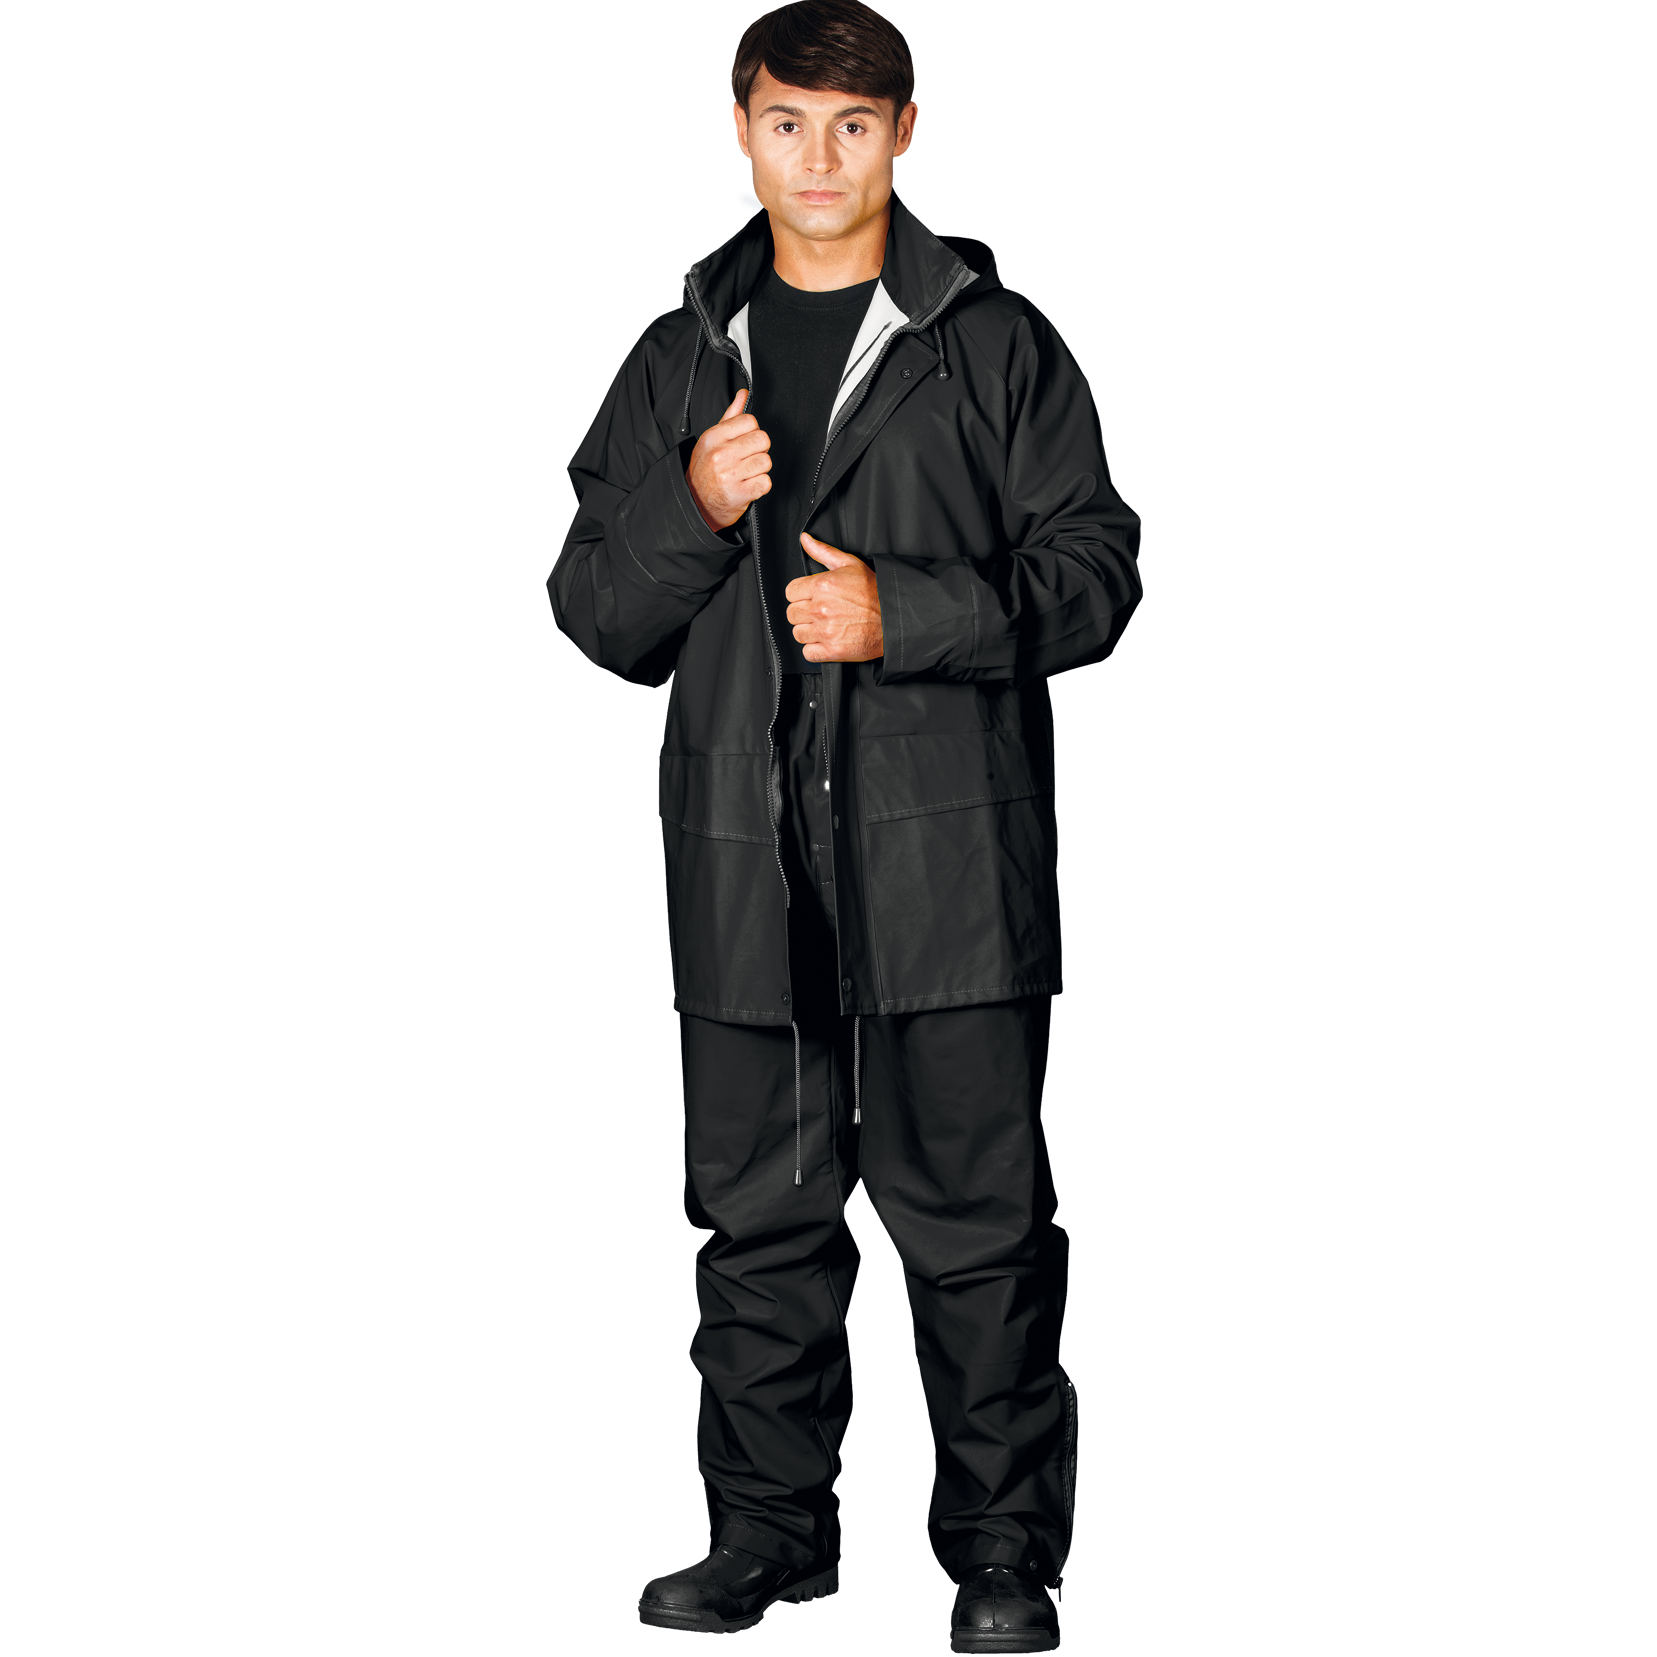 Juodos spalvos lietaus kostiumas. Lietaus kelnės ir striukė apsaugai nuo vandens